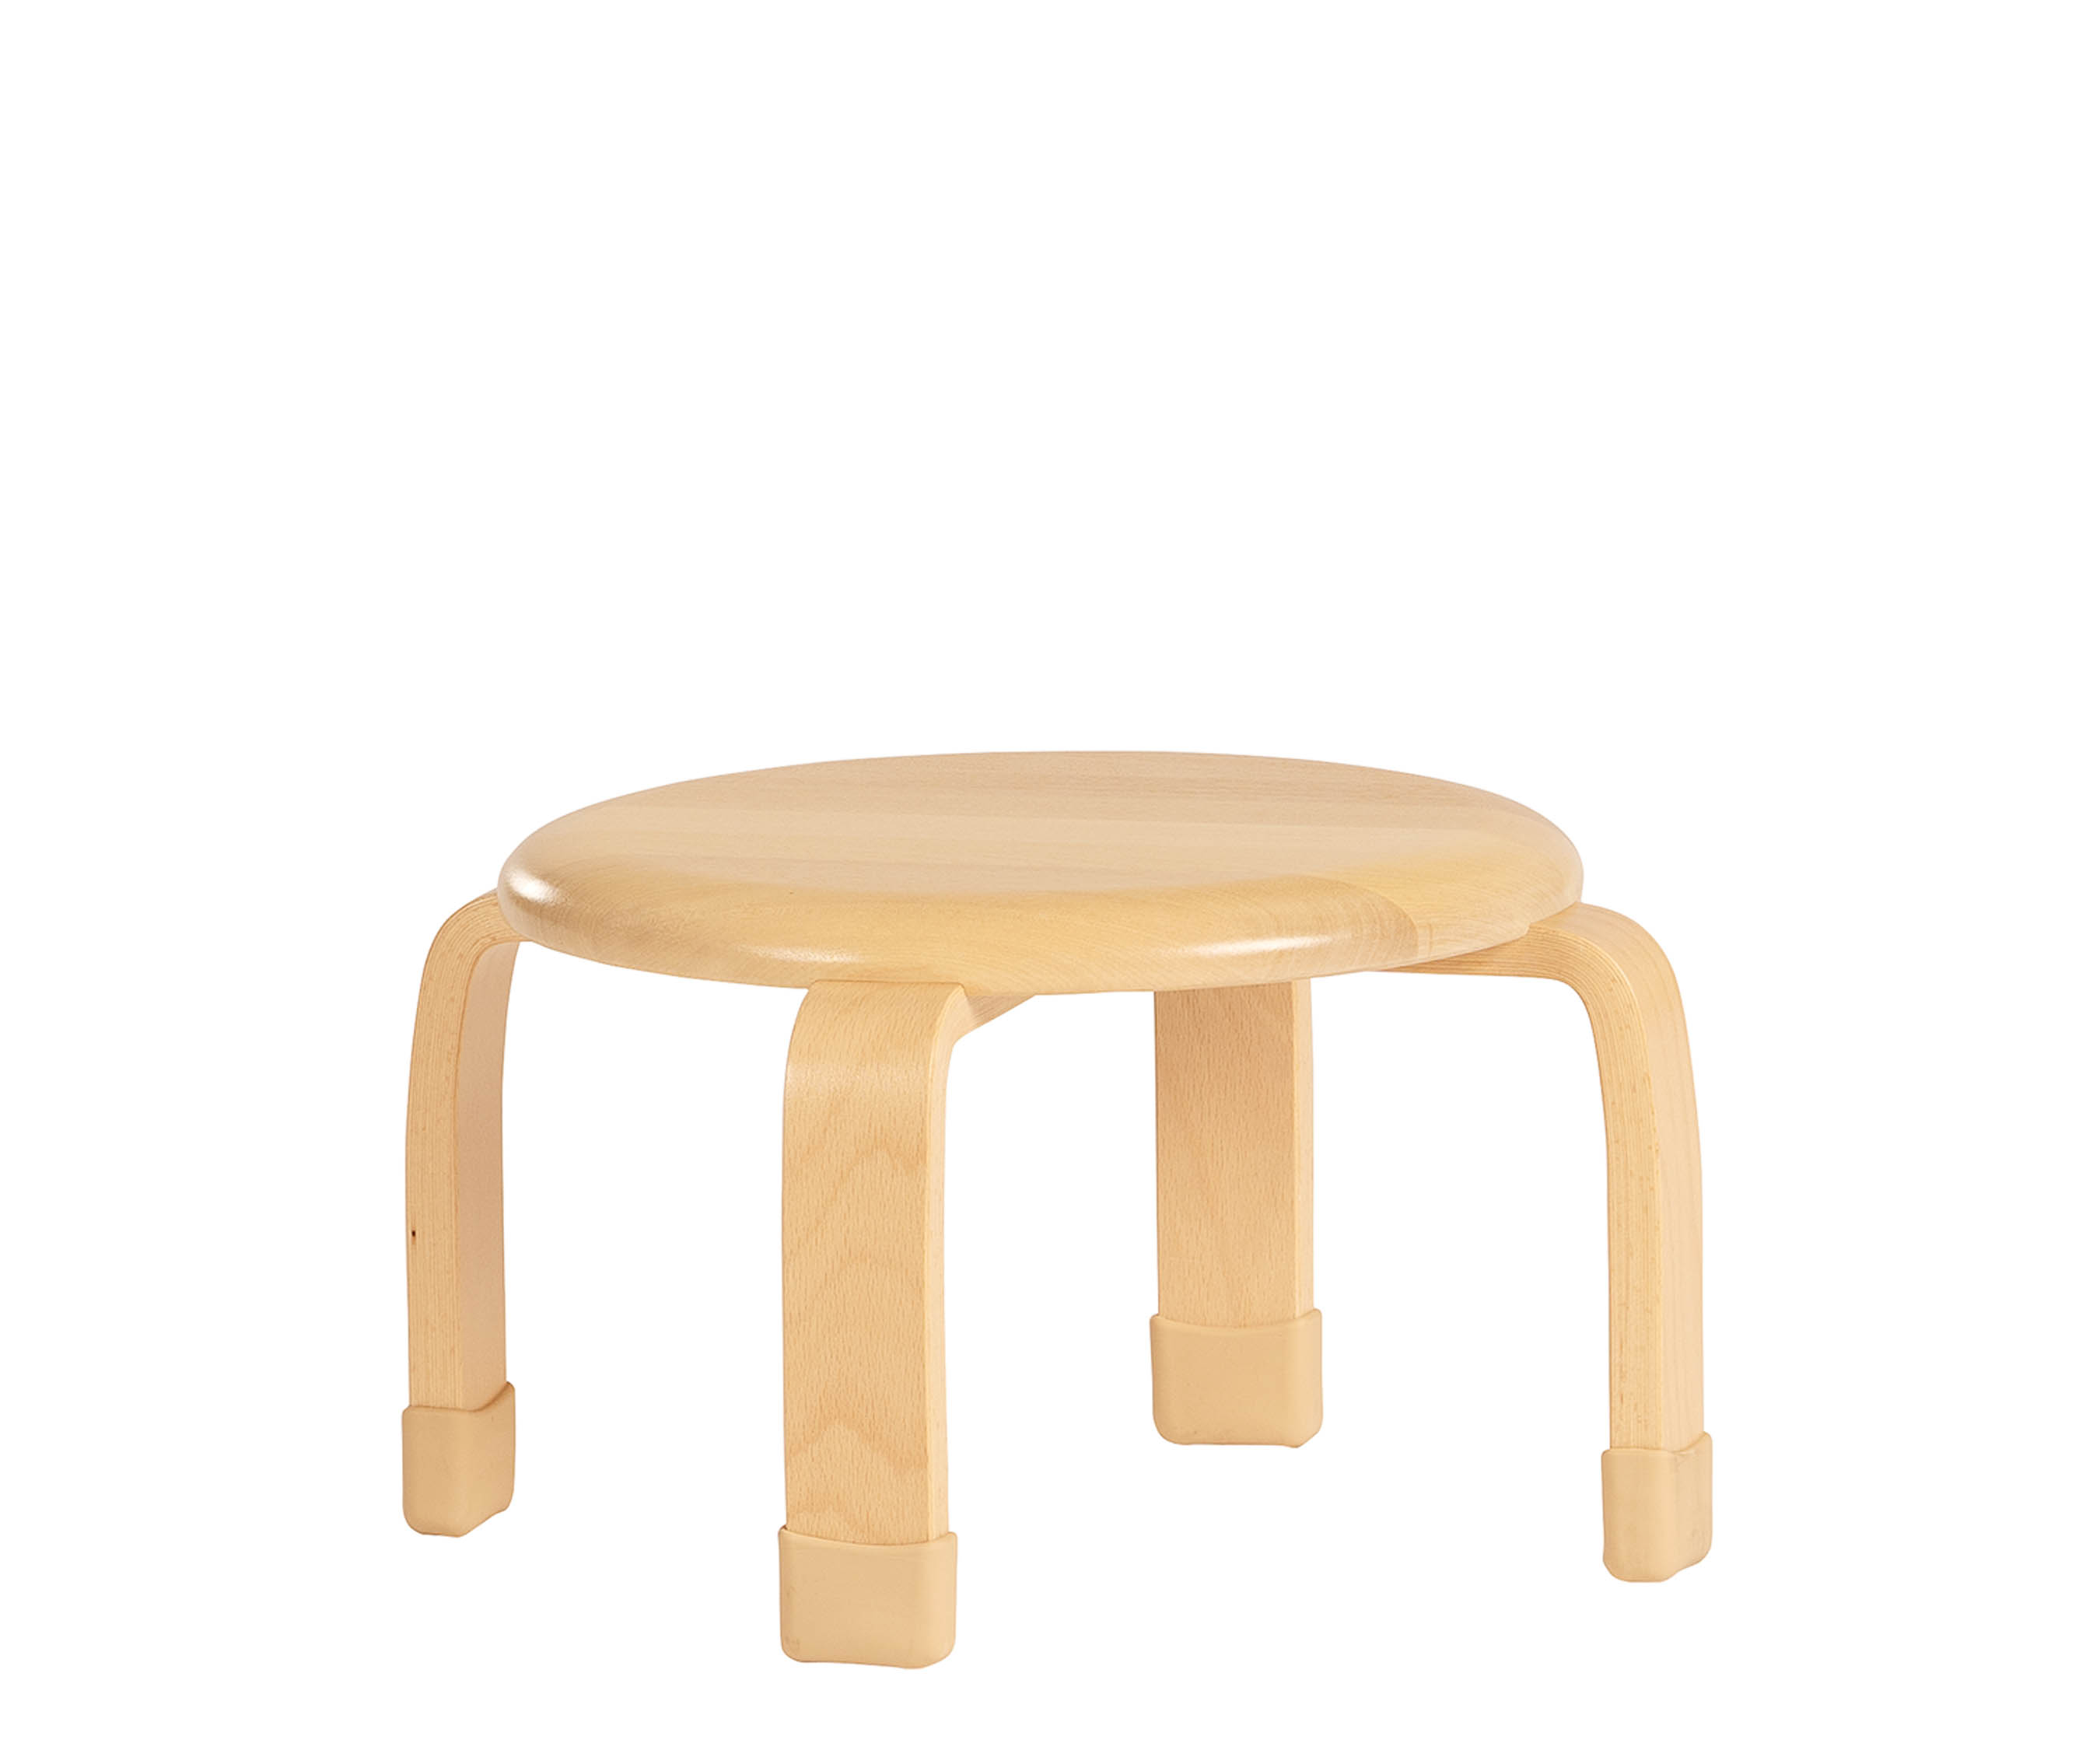 21 cm Stacking stool J123